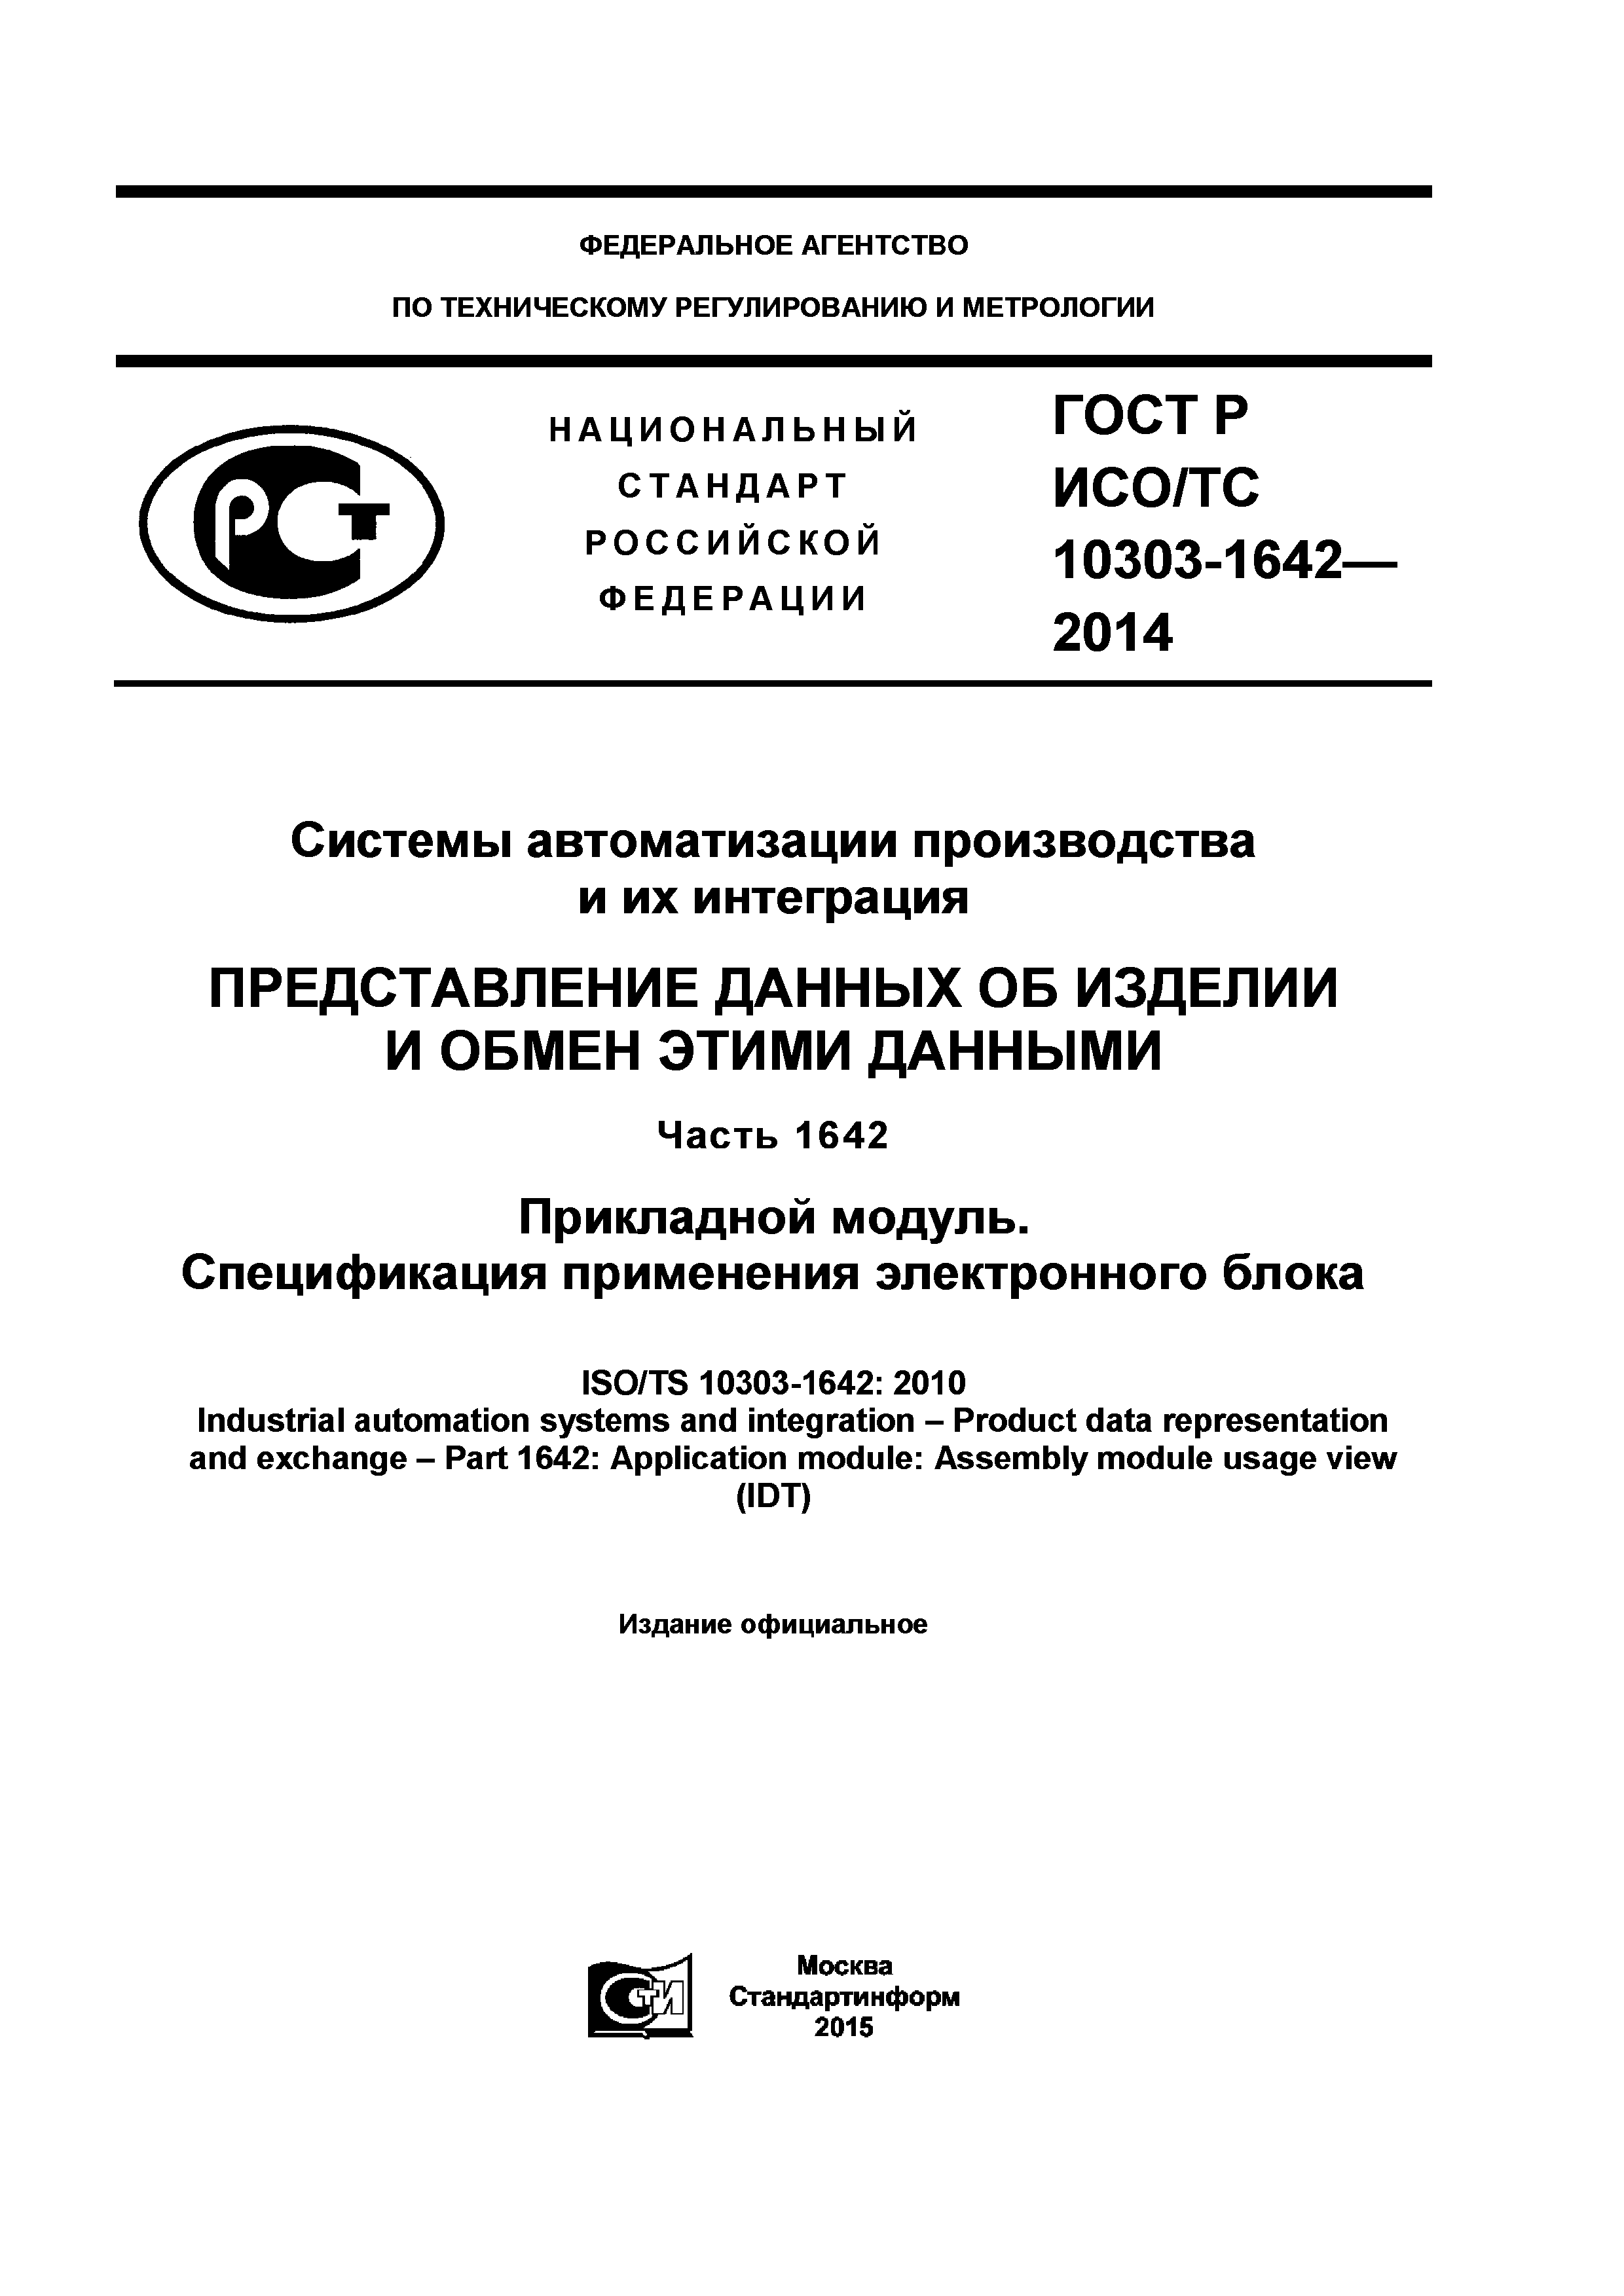 ГОСТ Р ИСО/ТС 10303-1642-2014